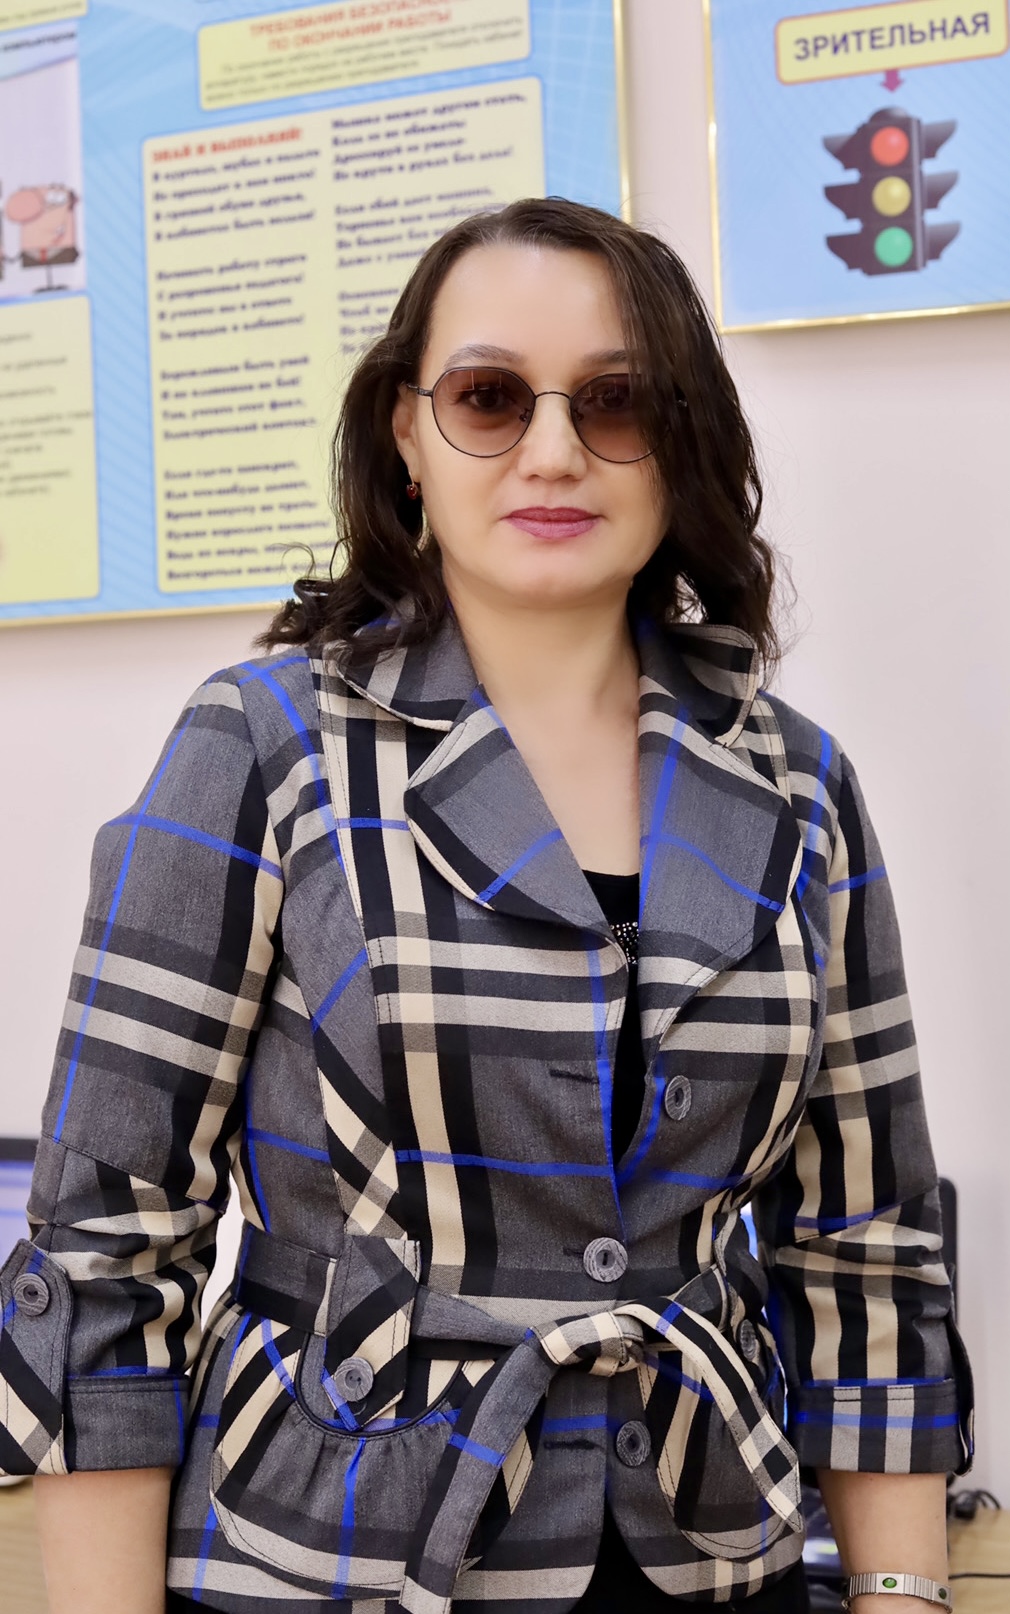 Смирнова Эльмира Хисматовна - Учитель информатики